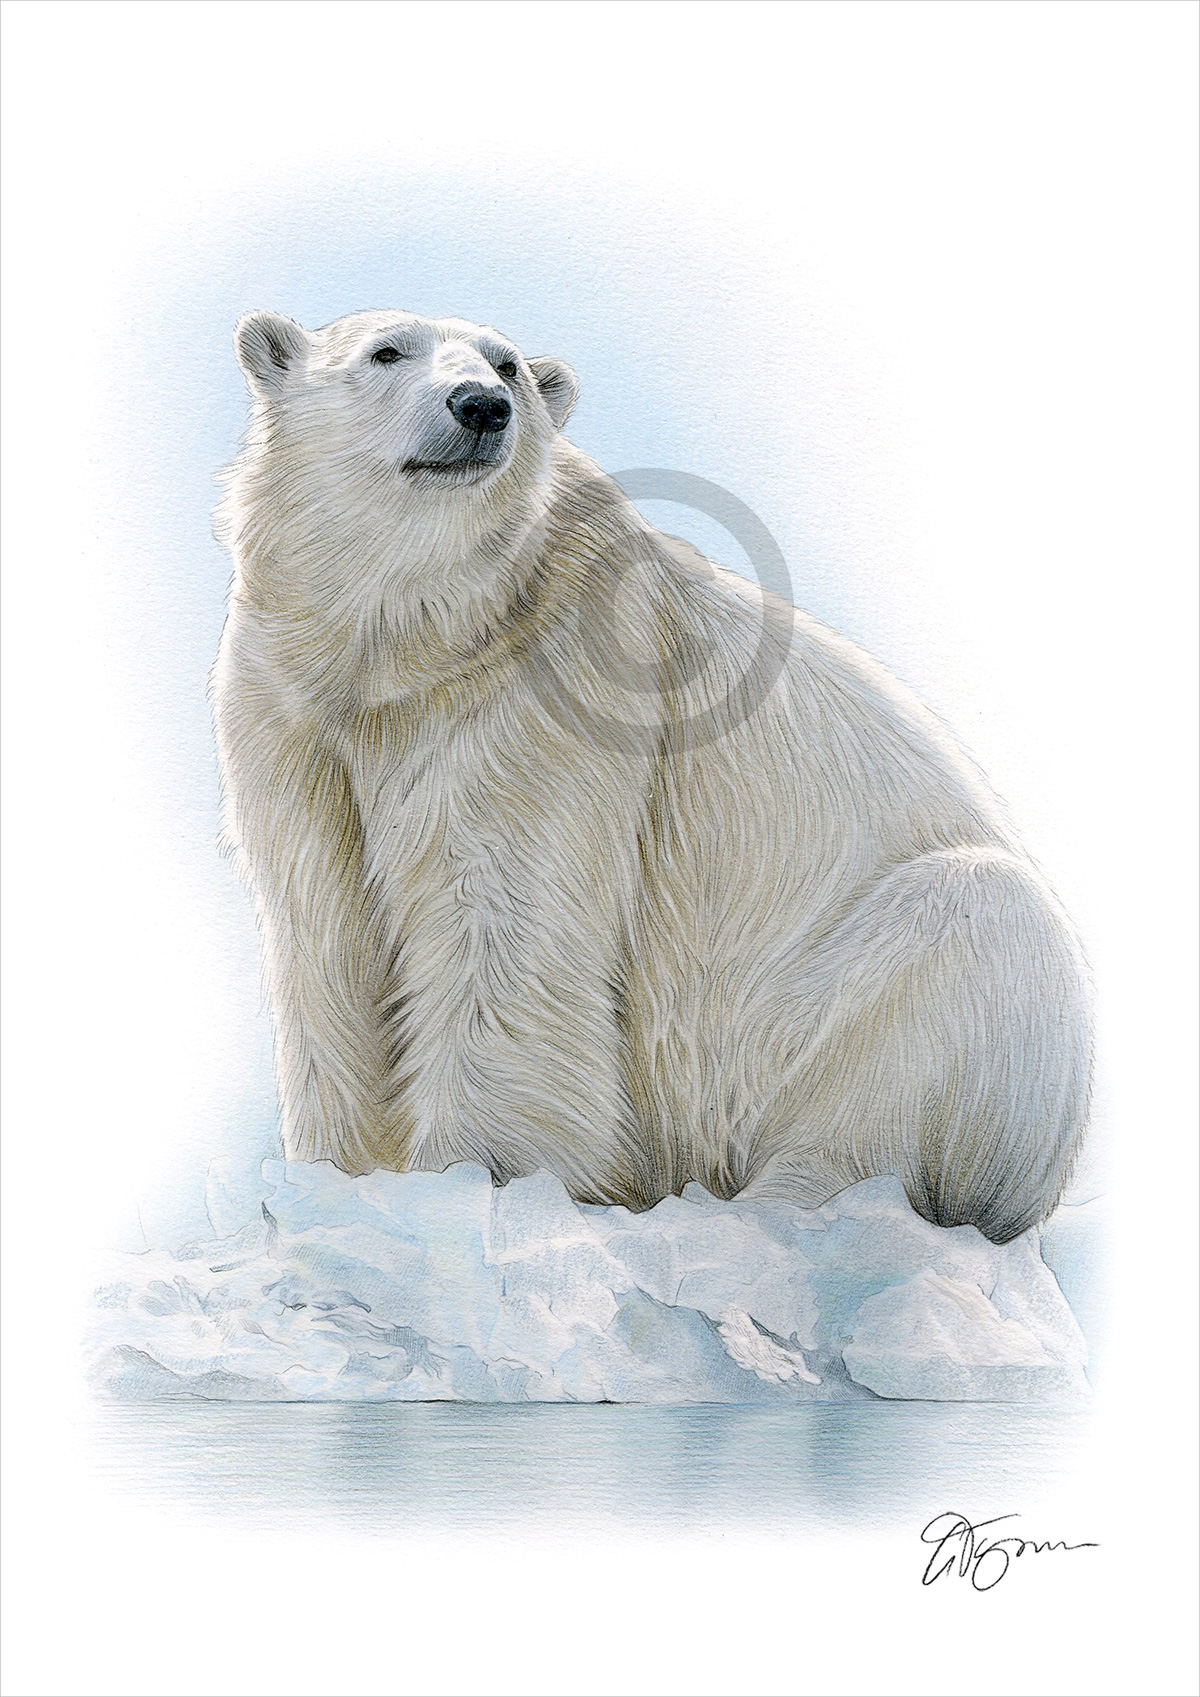 Colour pencil drawing of a Polar Bear by artist Gary Tymon